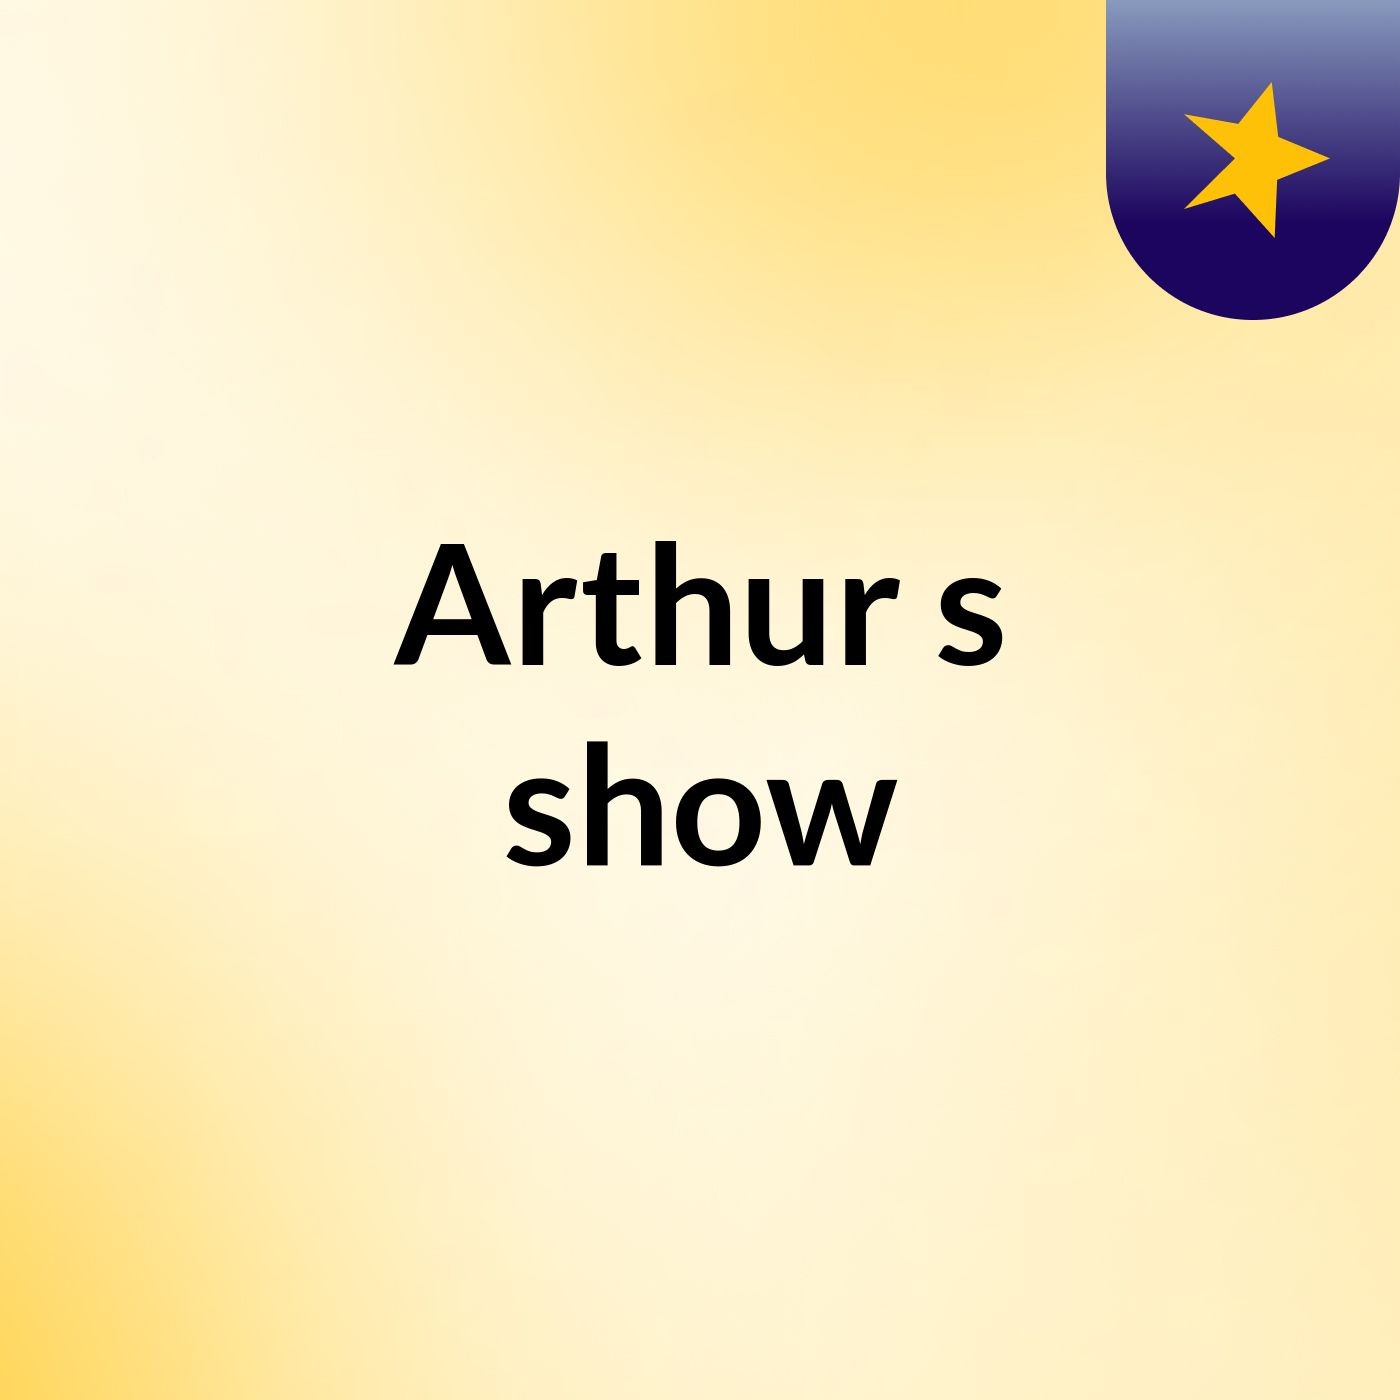 Arthur's show